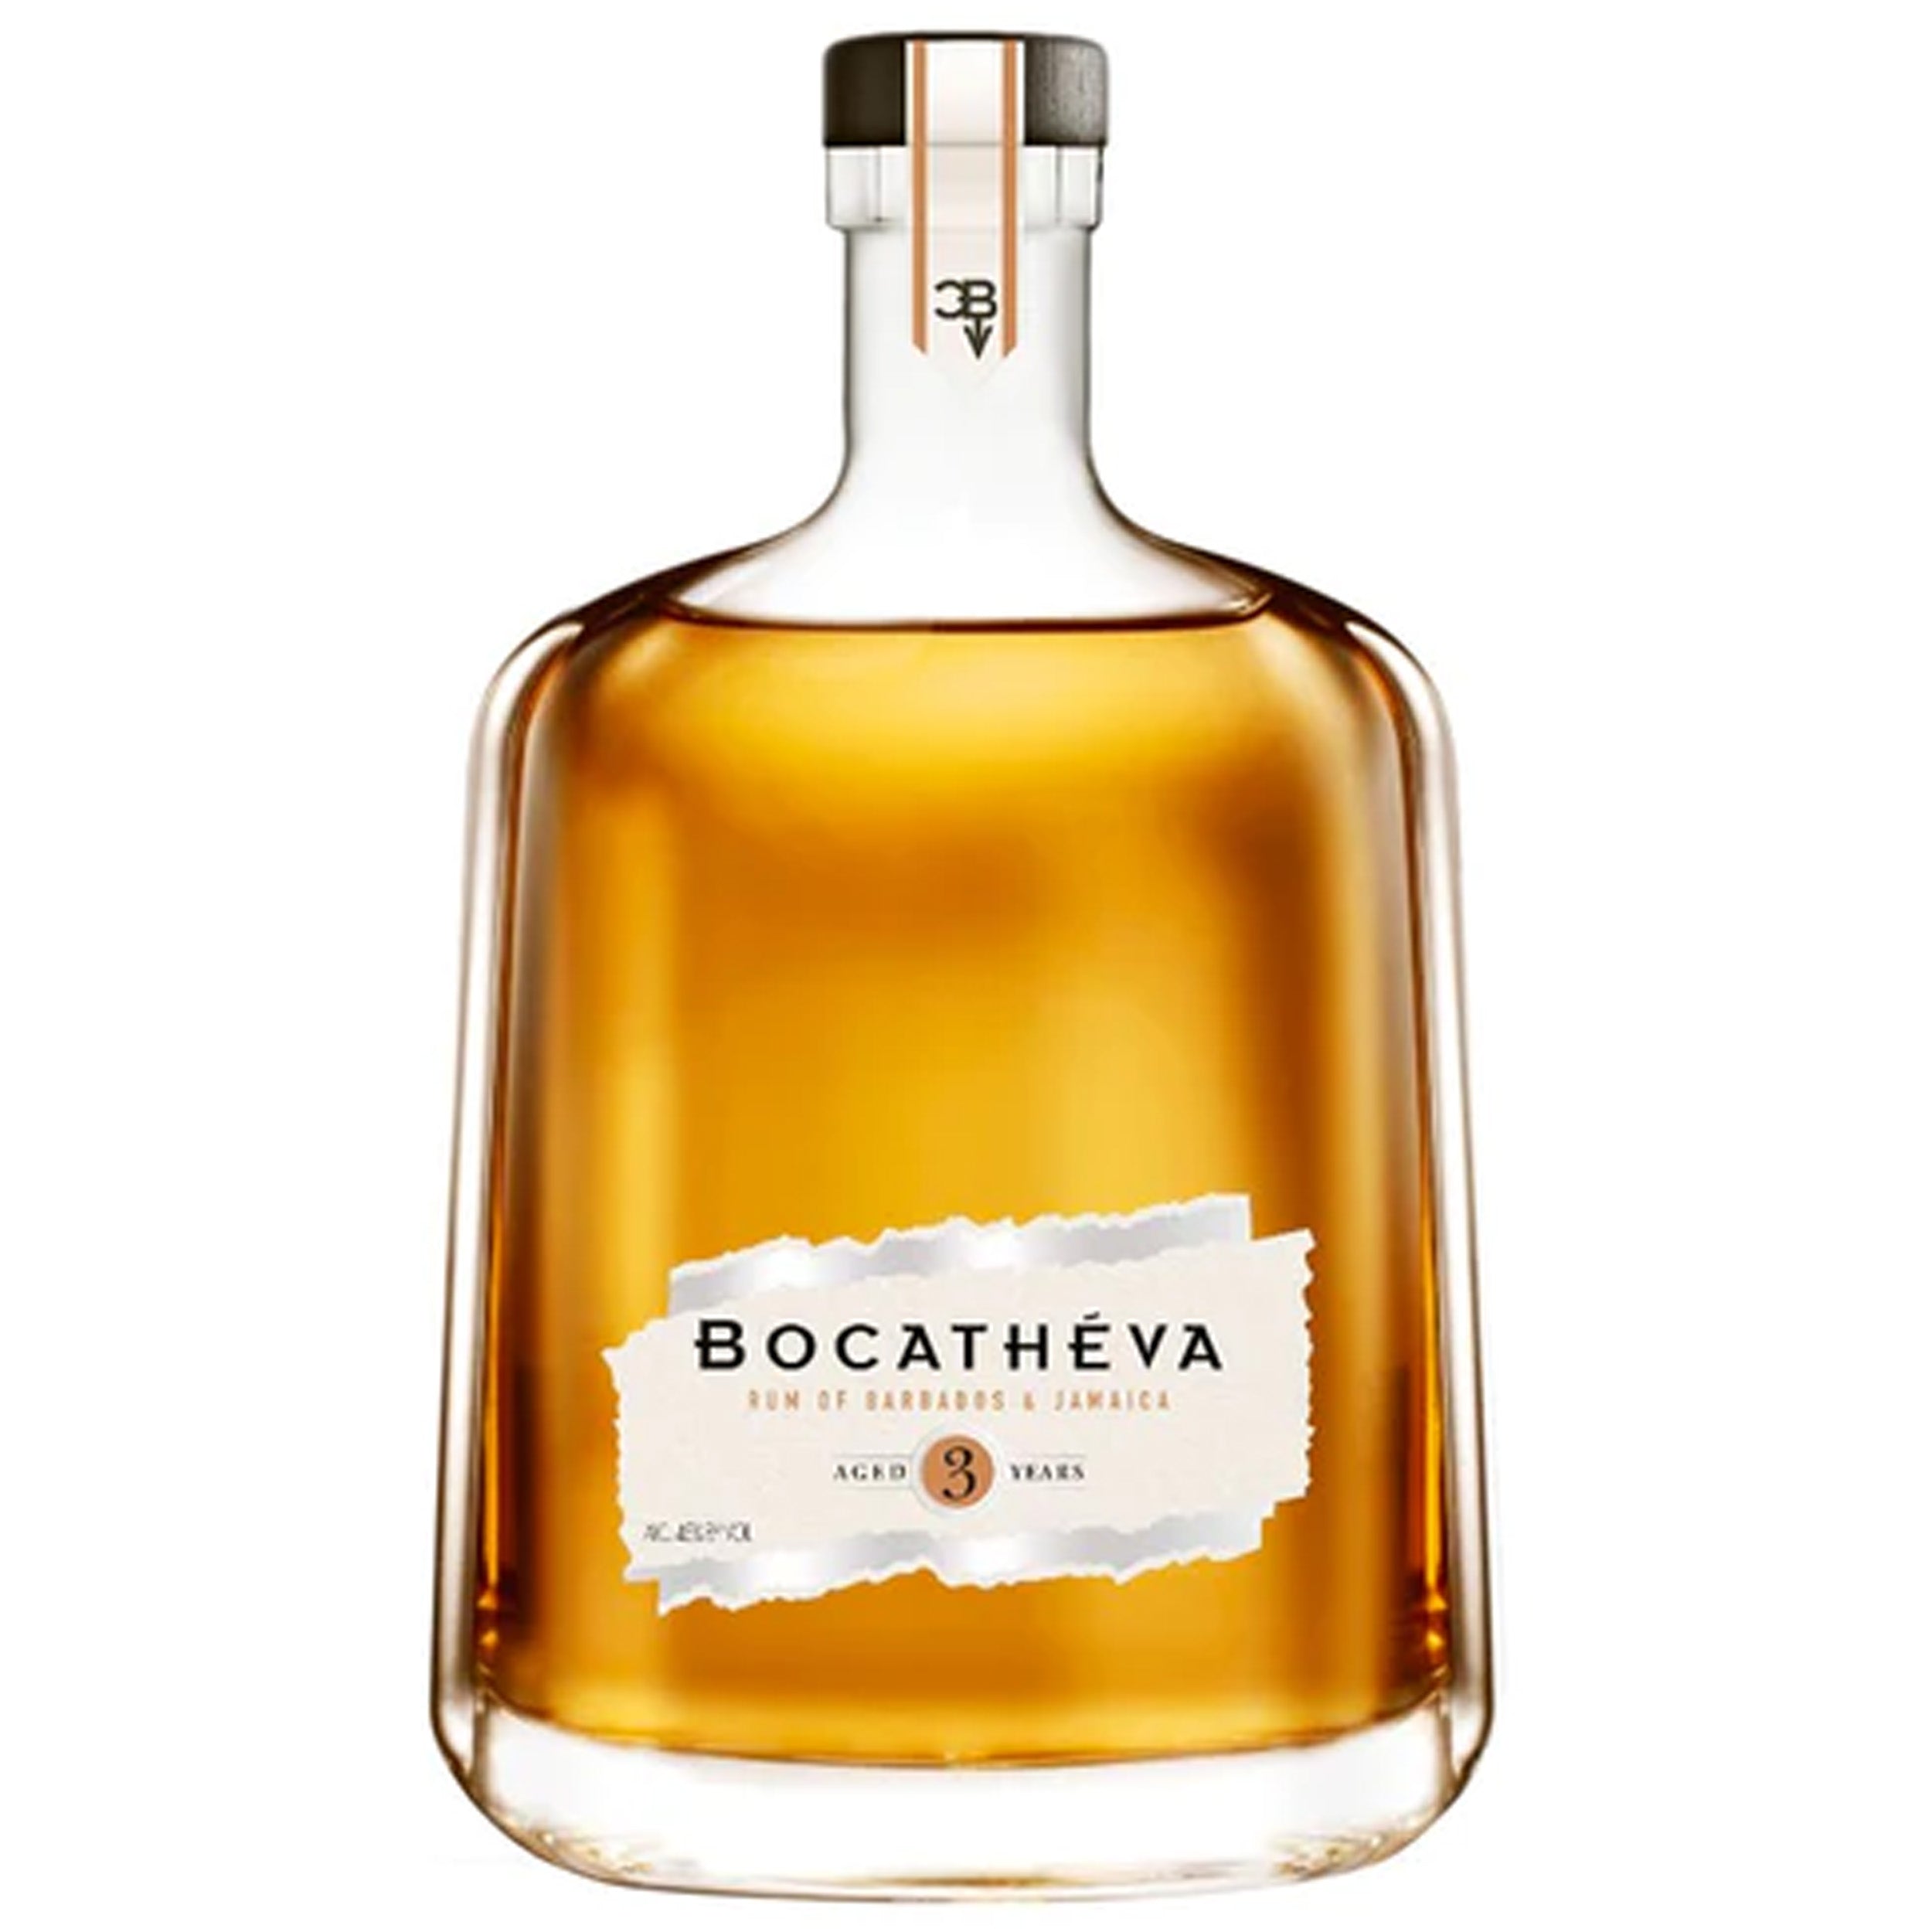 Bocatheva 3 Year Old Rum